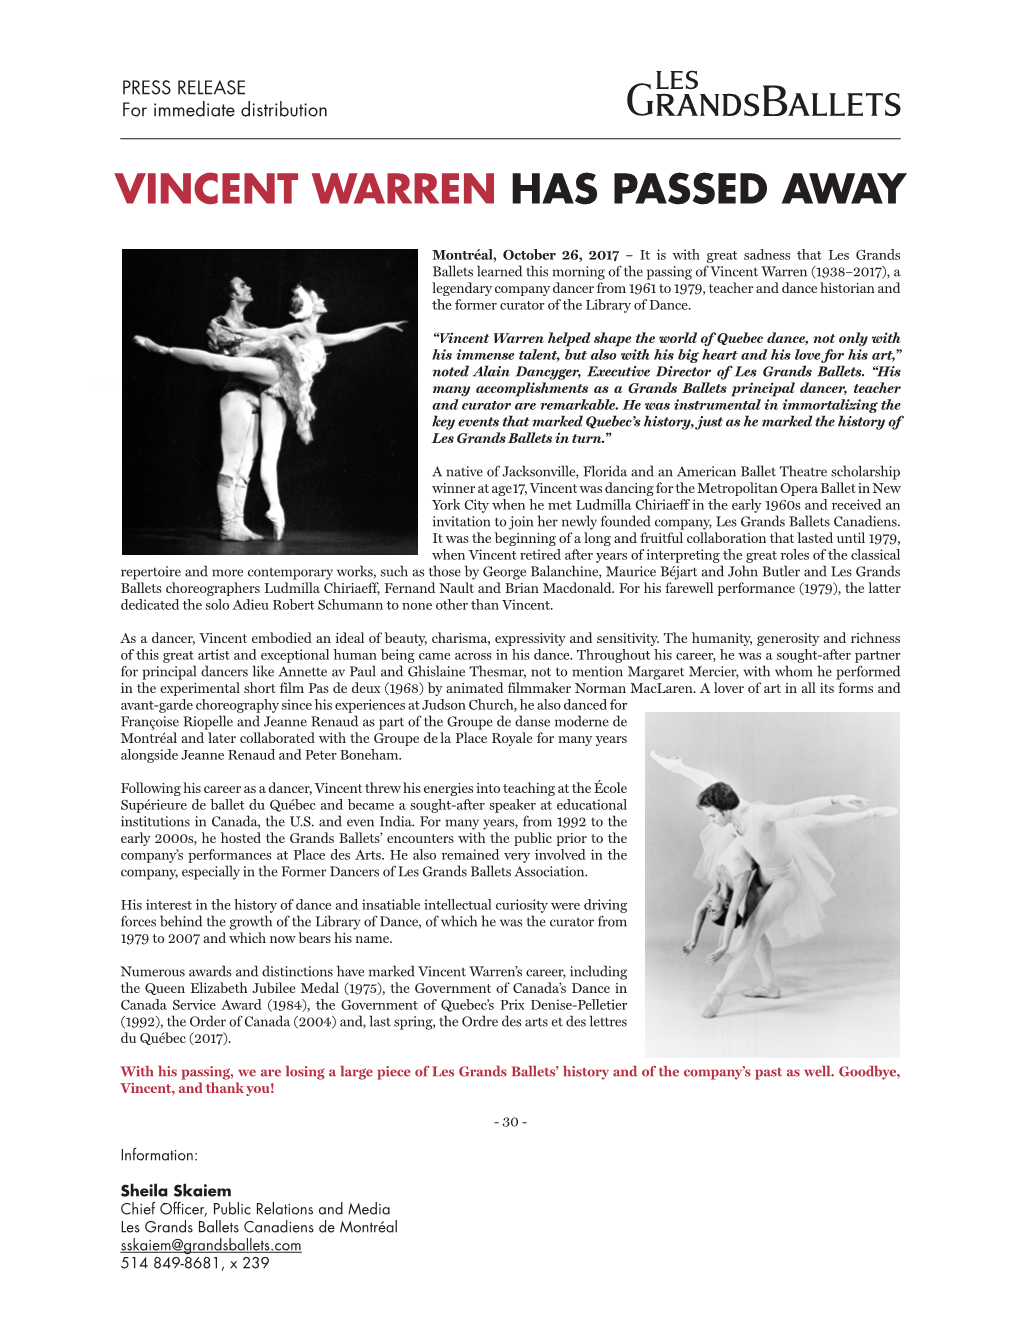 Vincent Warren Has Passed Away